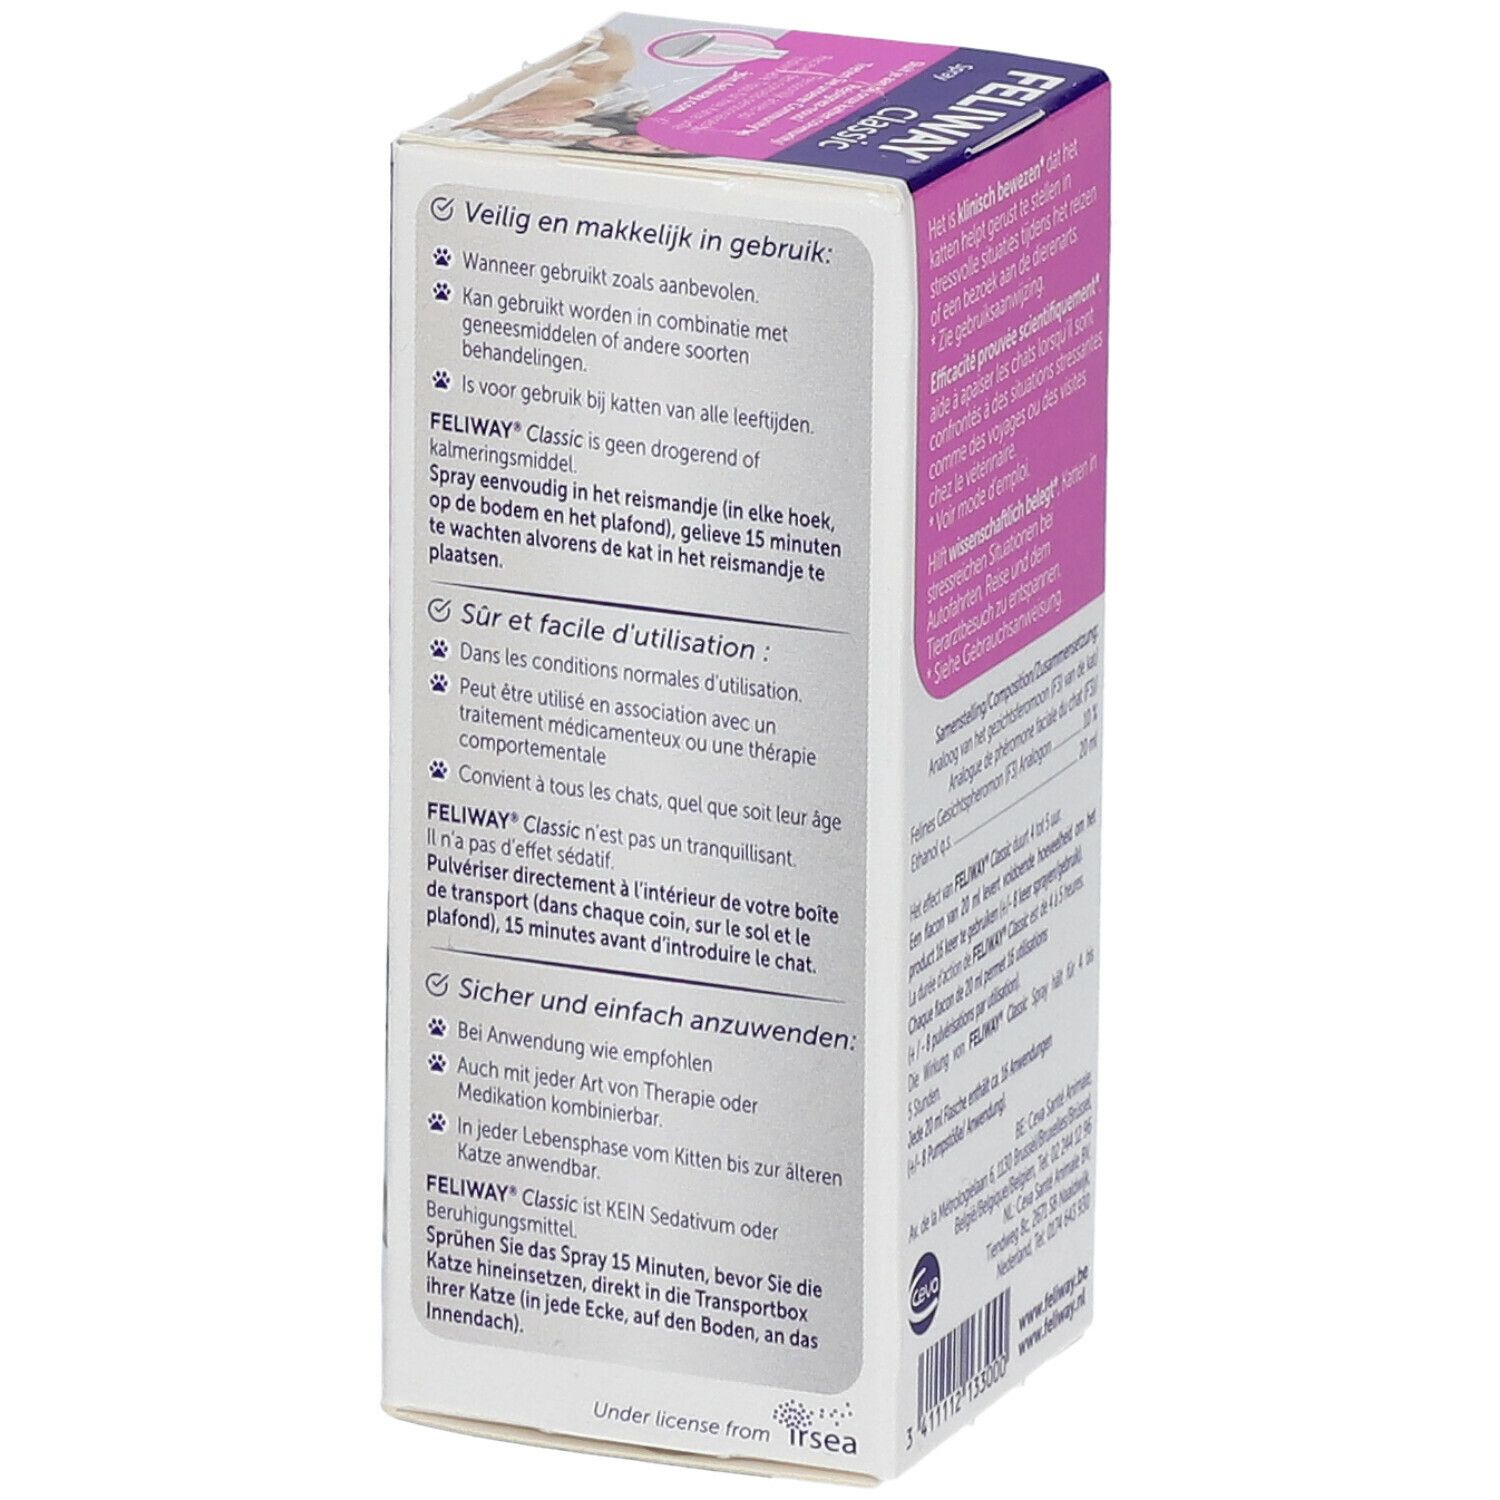 FELIWAY® Classic Spray 20 ml - Redcare Pharmacie